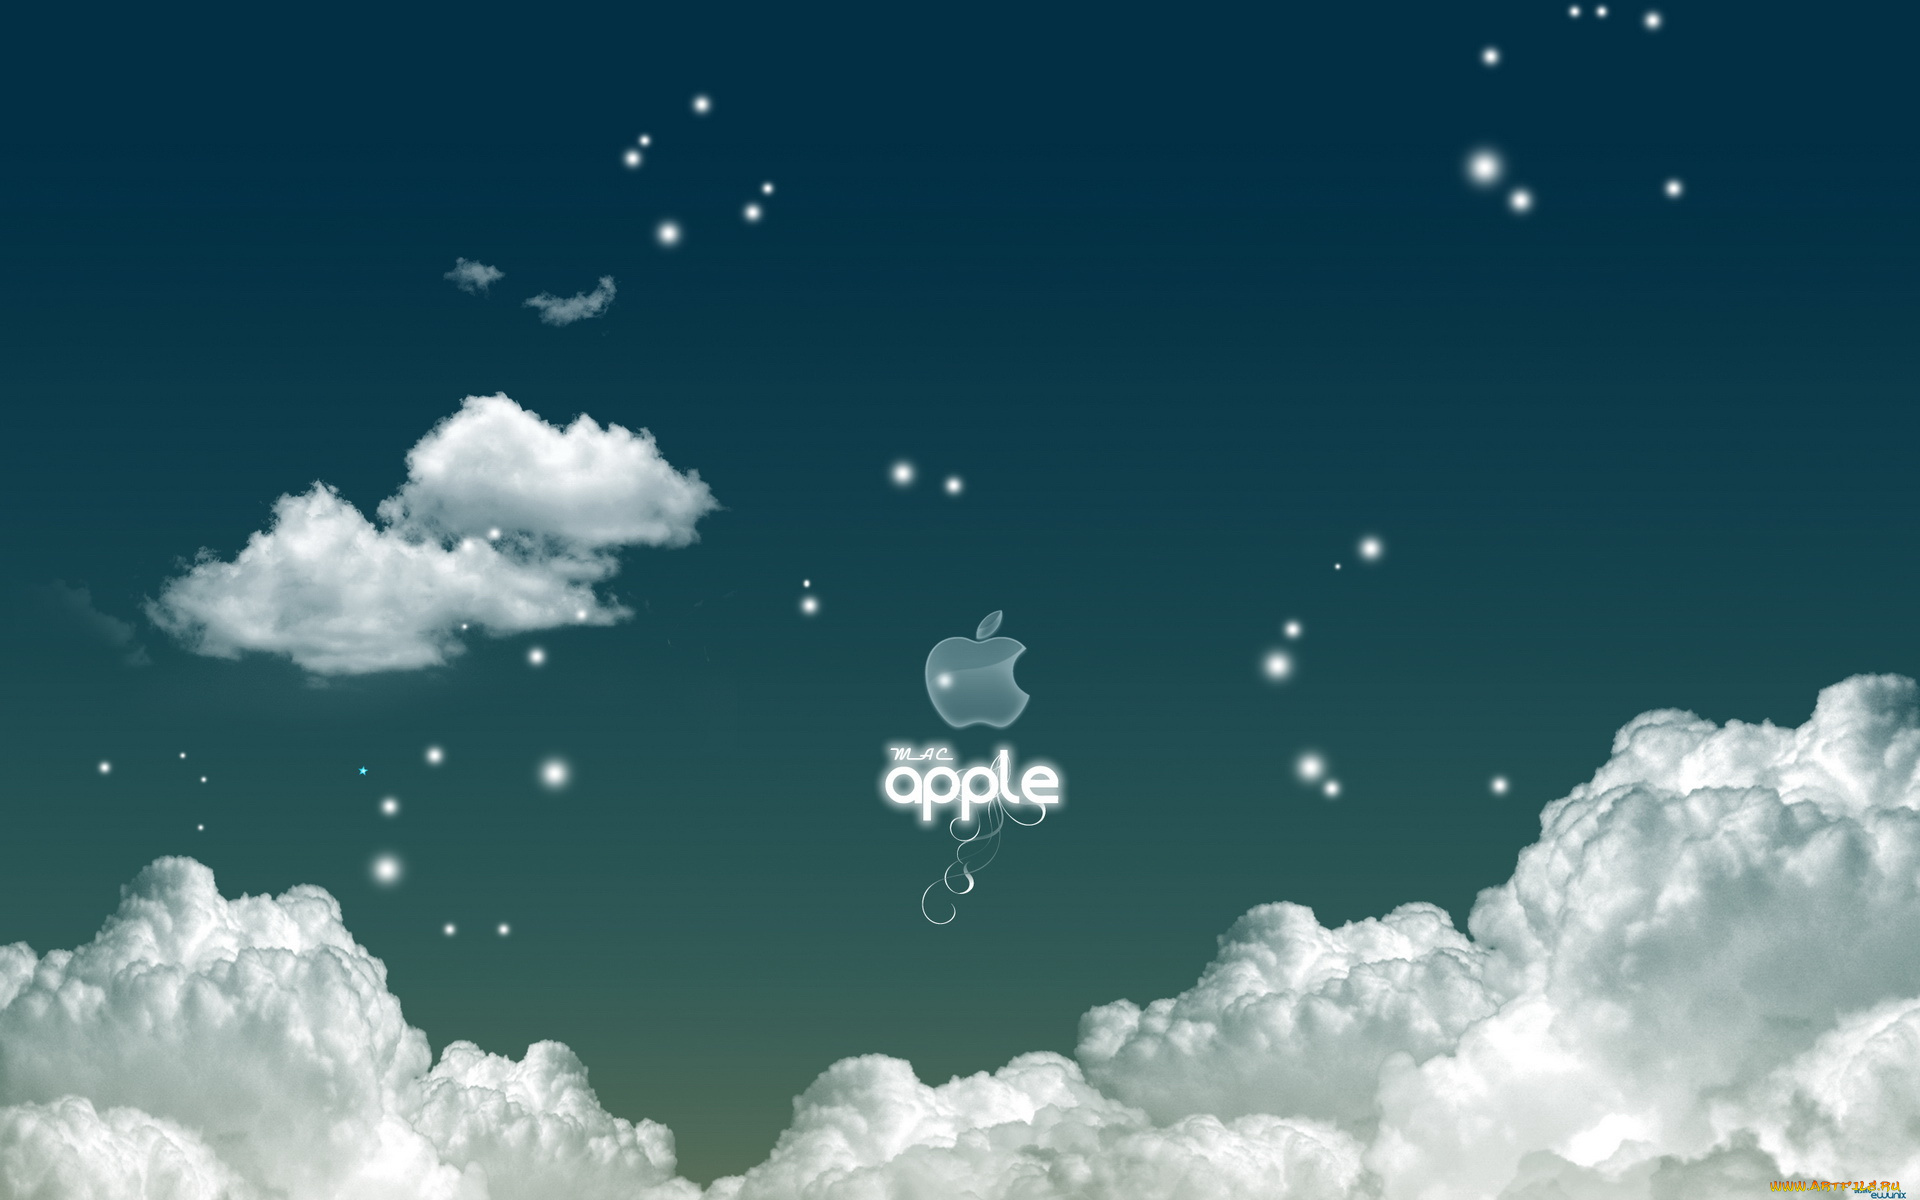 компьютеры, apple, логотип, яблоко, облака